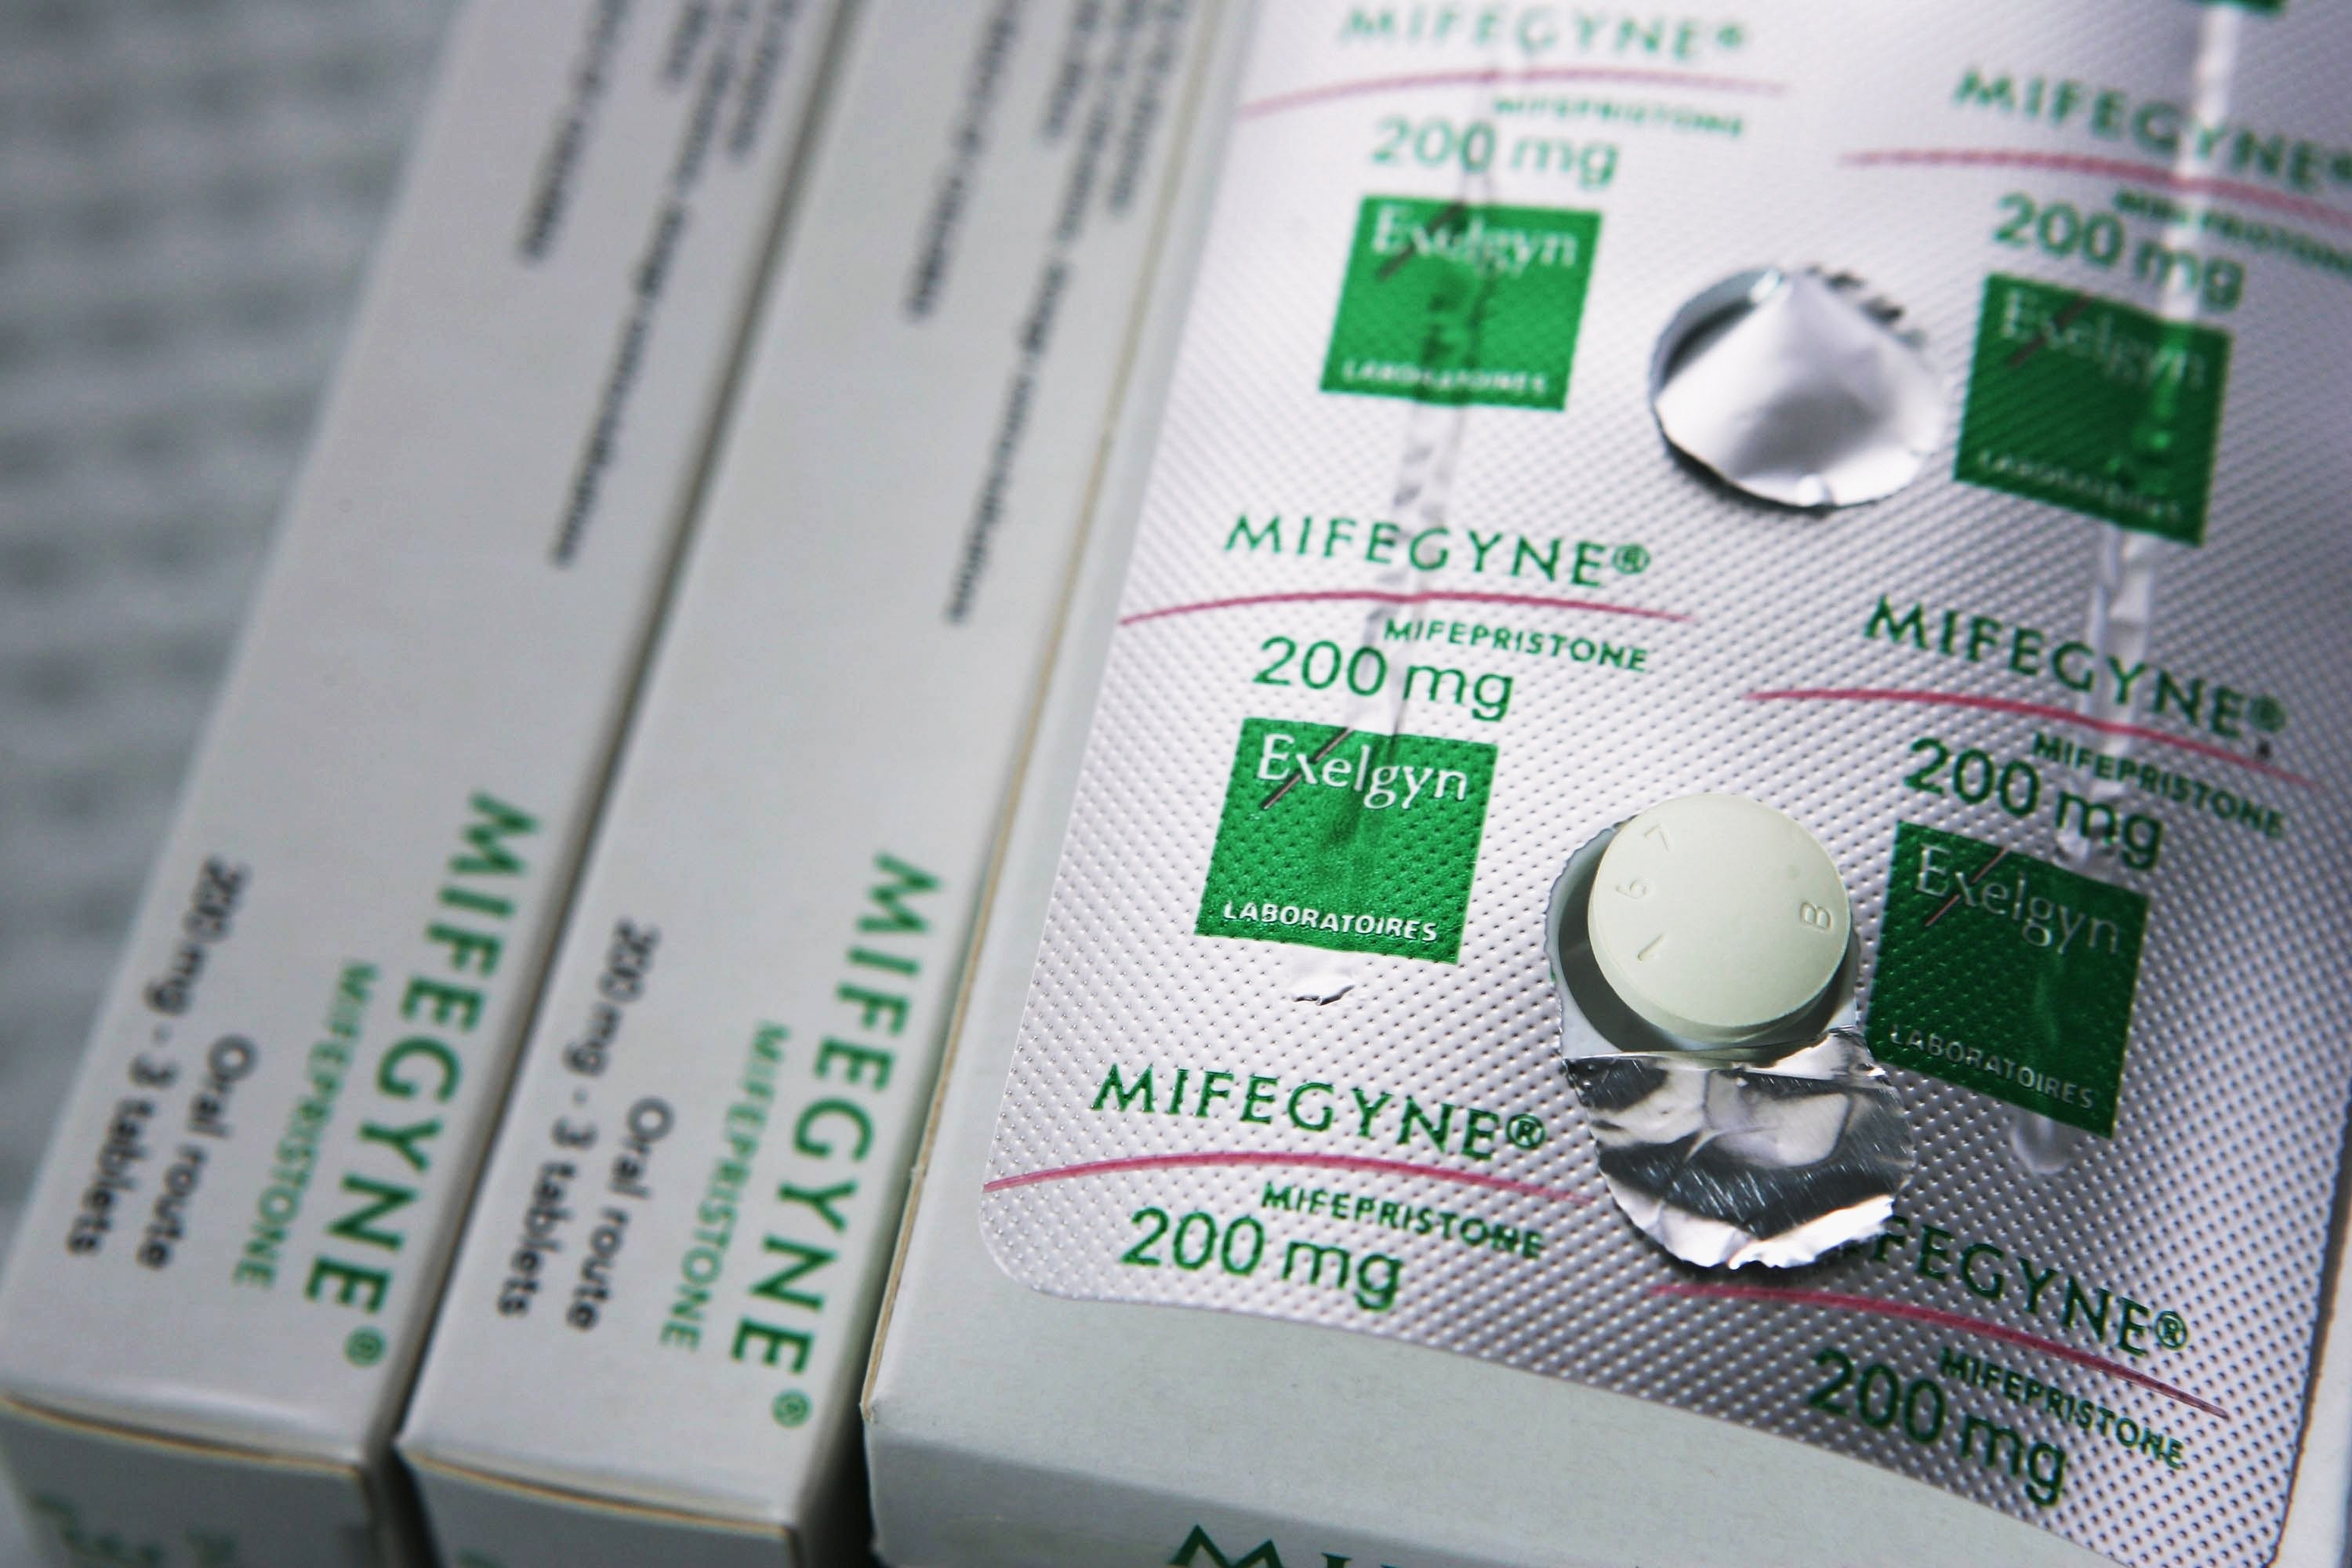 Таблетка выкидыша купит. "Mifepristone" (мифепристон). Мифегин медикаментозное прерывание. Мифегин 200 мг. Таблетки от прерывания беременности Мифегин.